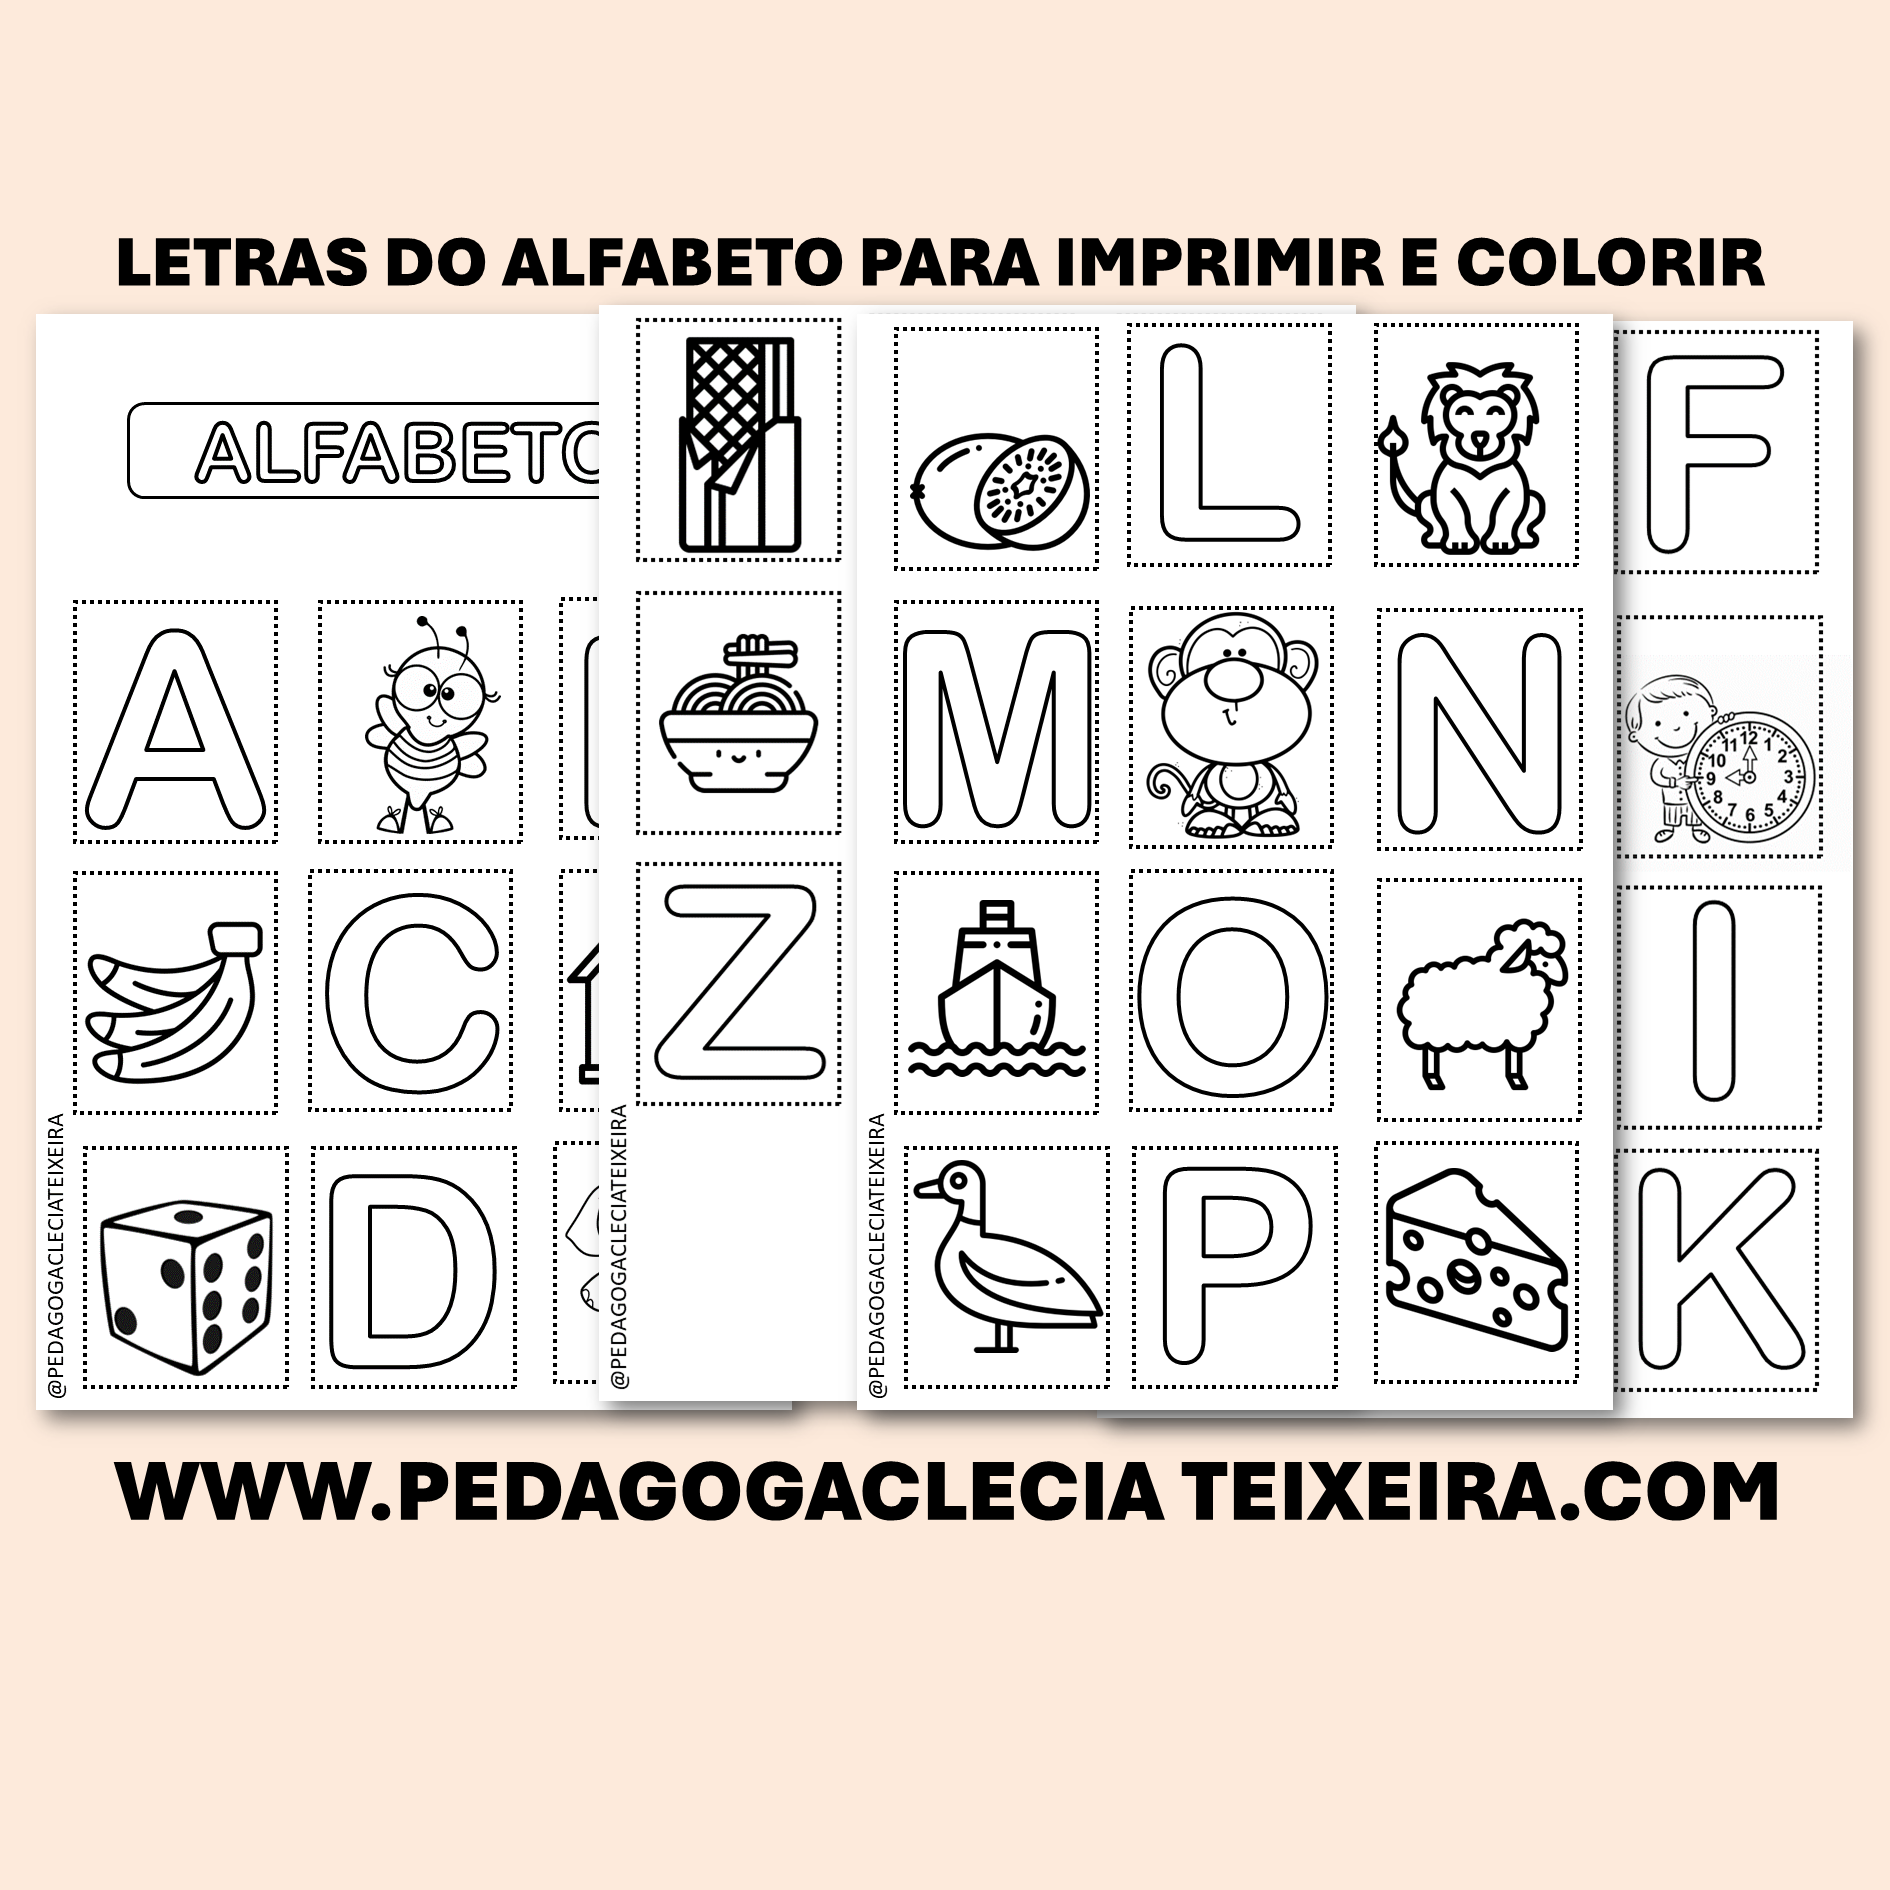 Letras do alfabeto para imprimir e colorir